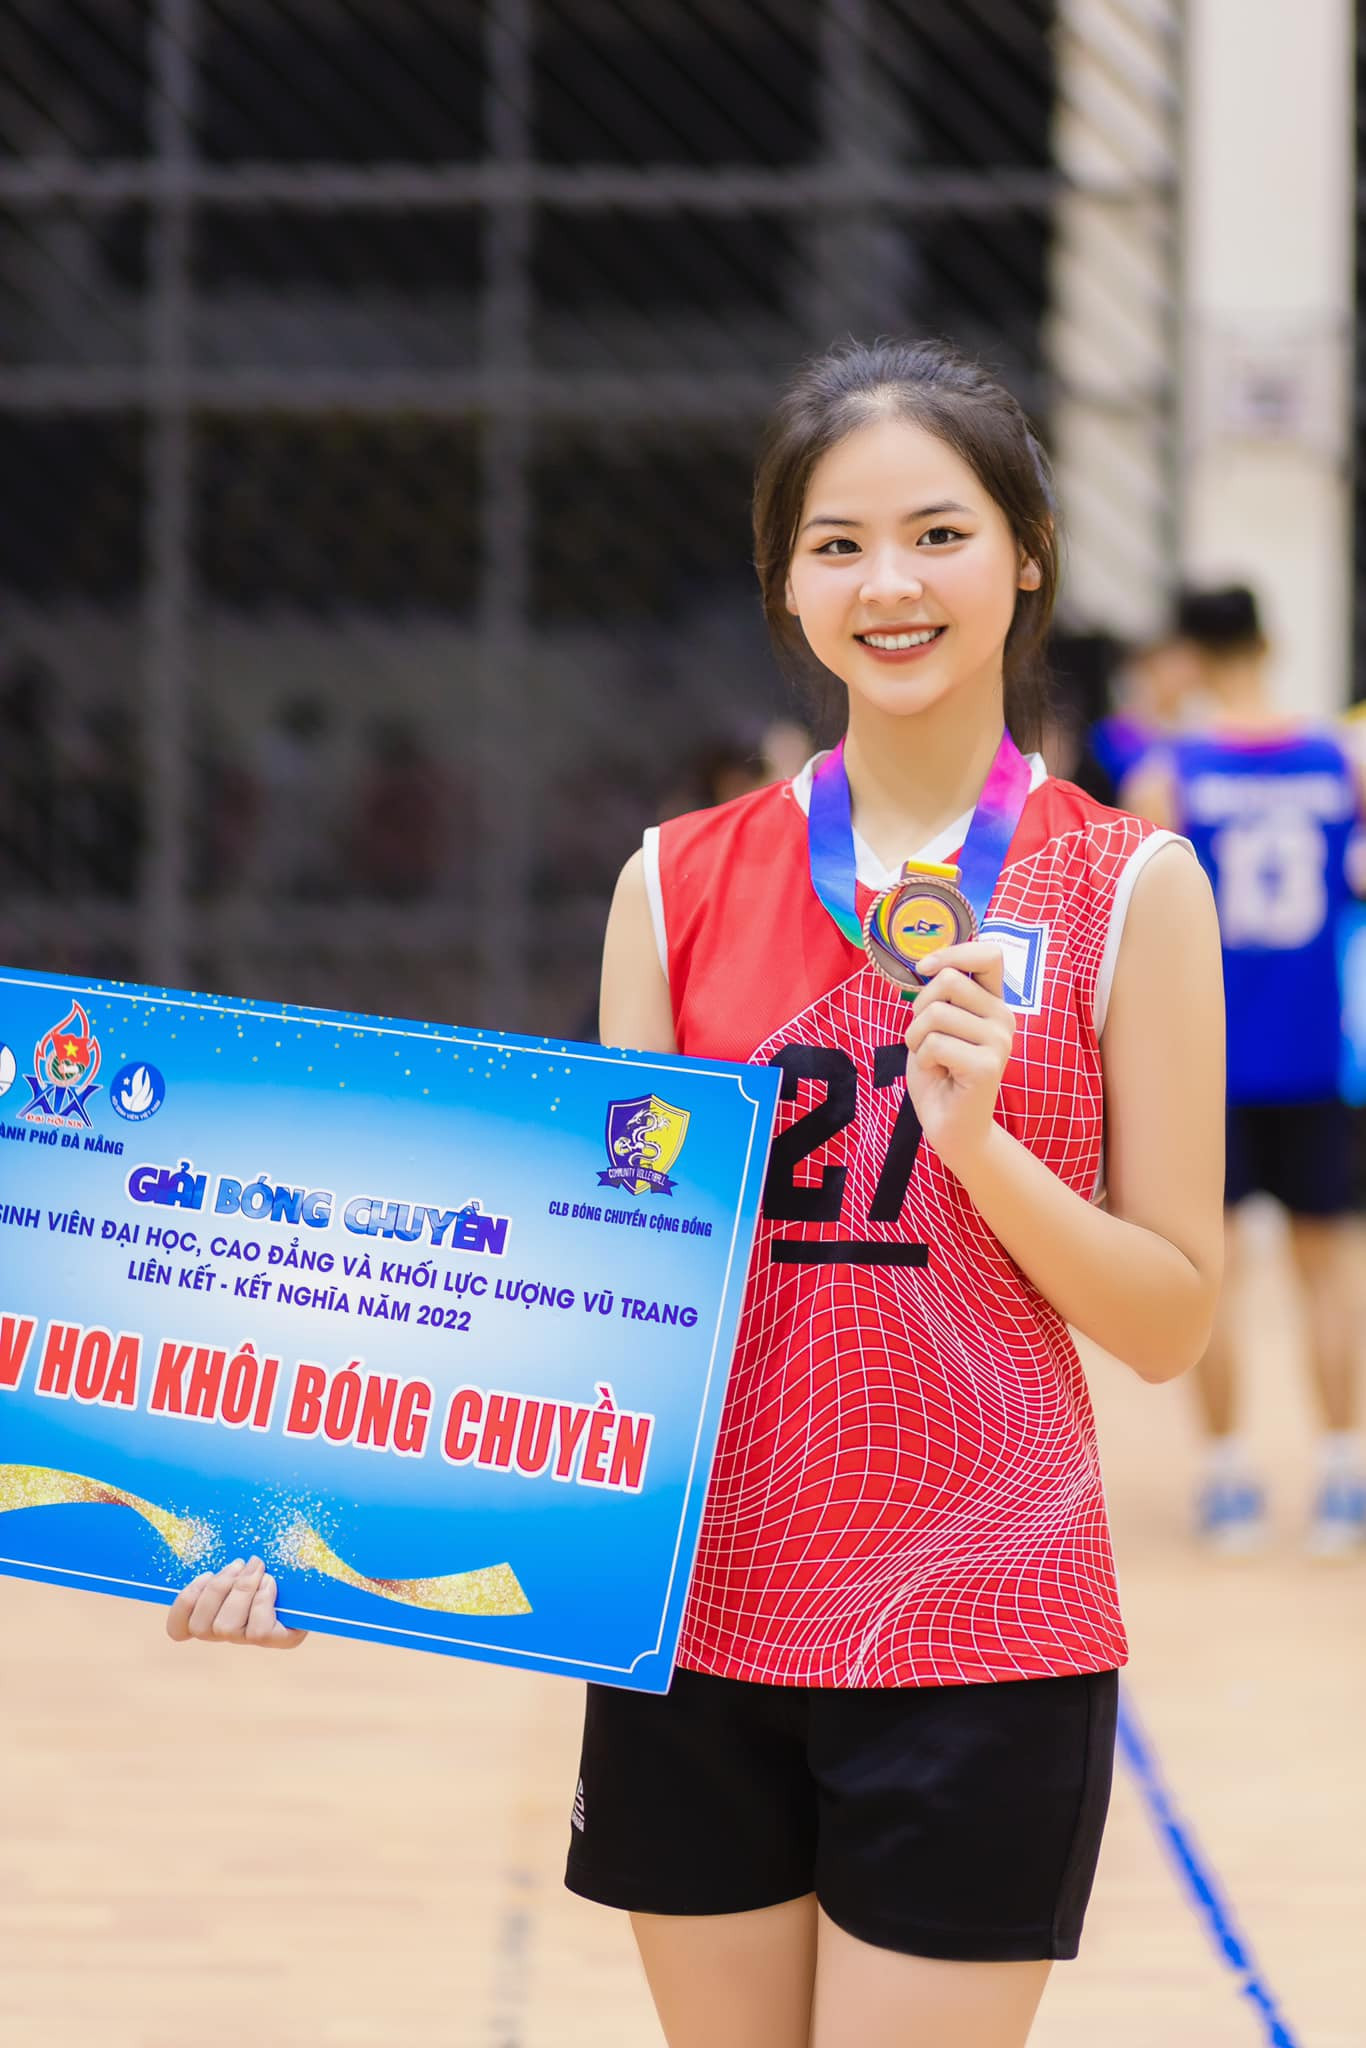 Hoa khôi bóng chuyền giành vé đầu tiên vào chung kết Miss World Vietnam 2023 305568